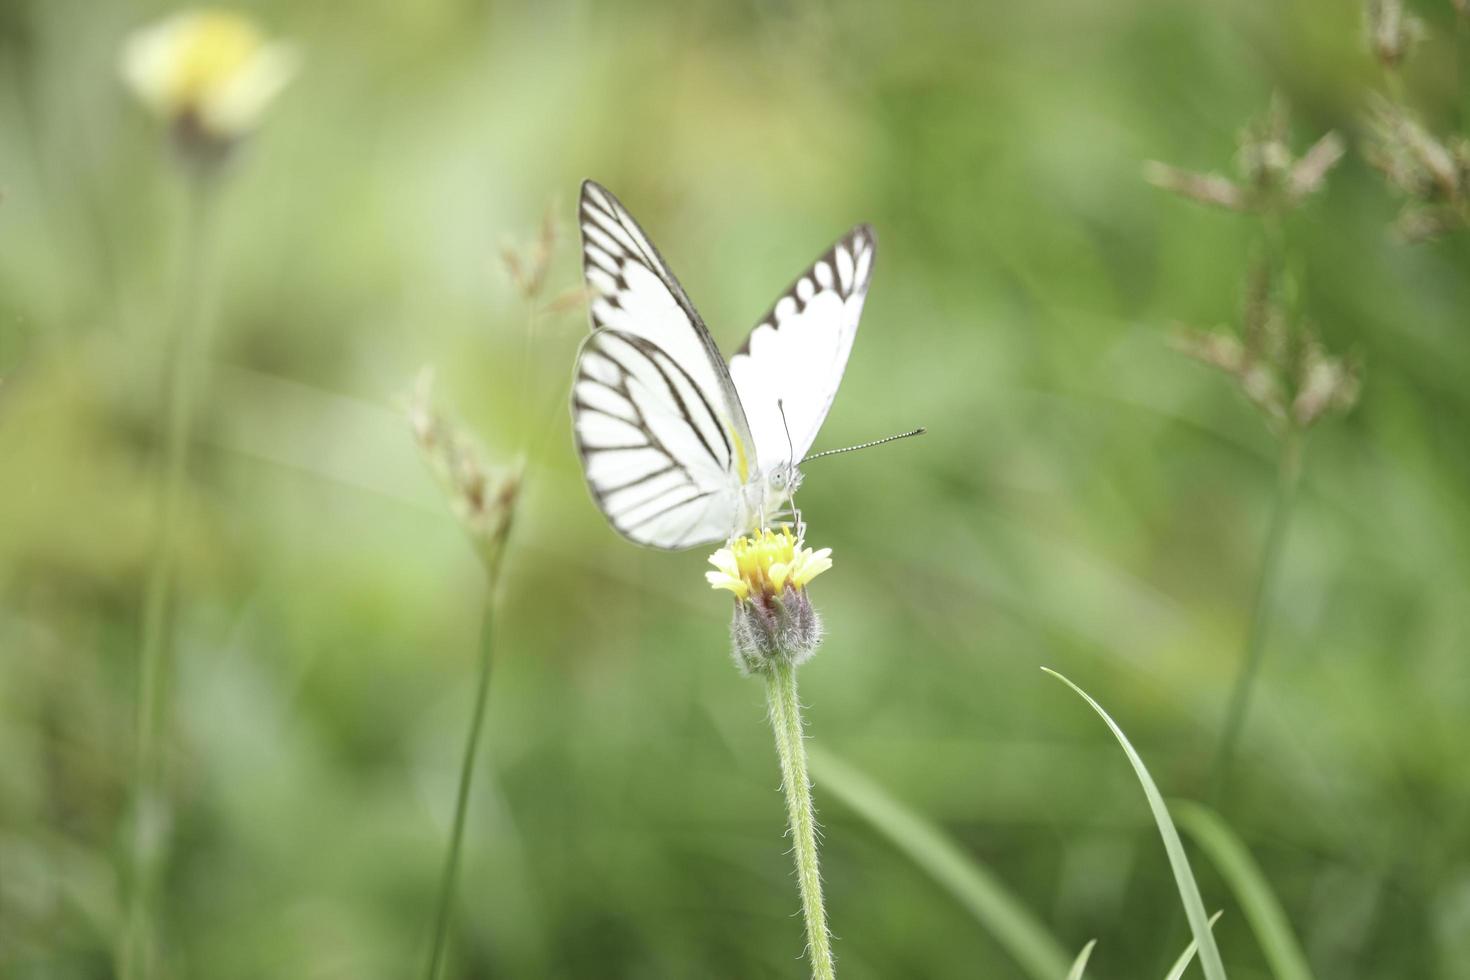 borboleta em flores silvestres no campo de verão, belo inseto na natureza verde turva fundo, vida selvagem no jardim primavera, ecologia paisagem natural foto